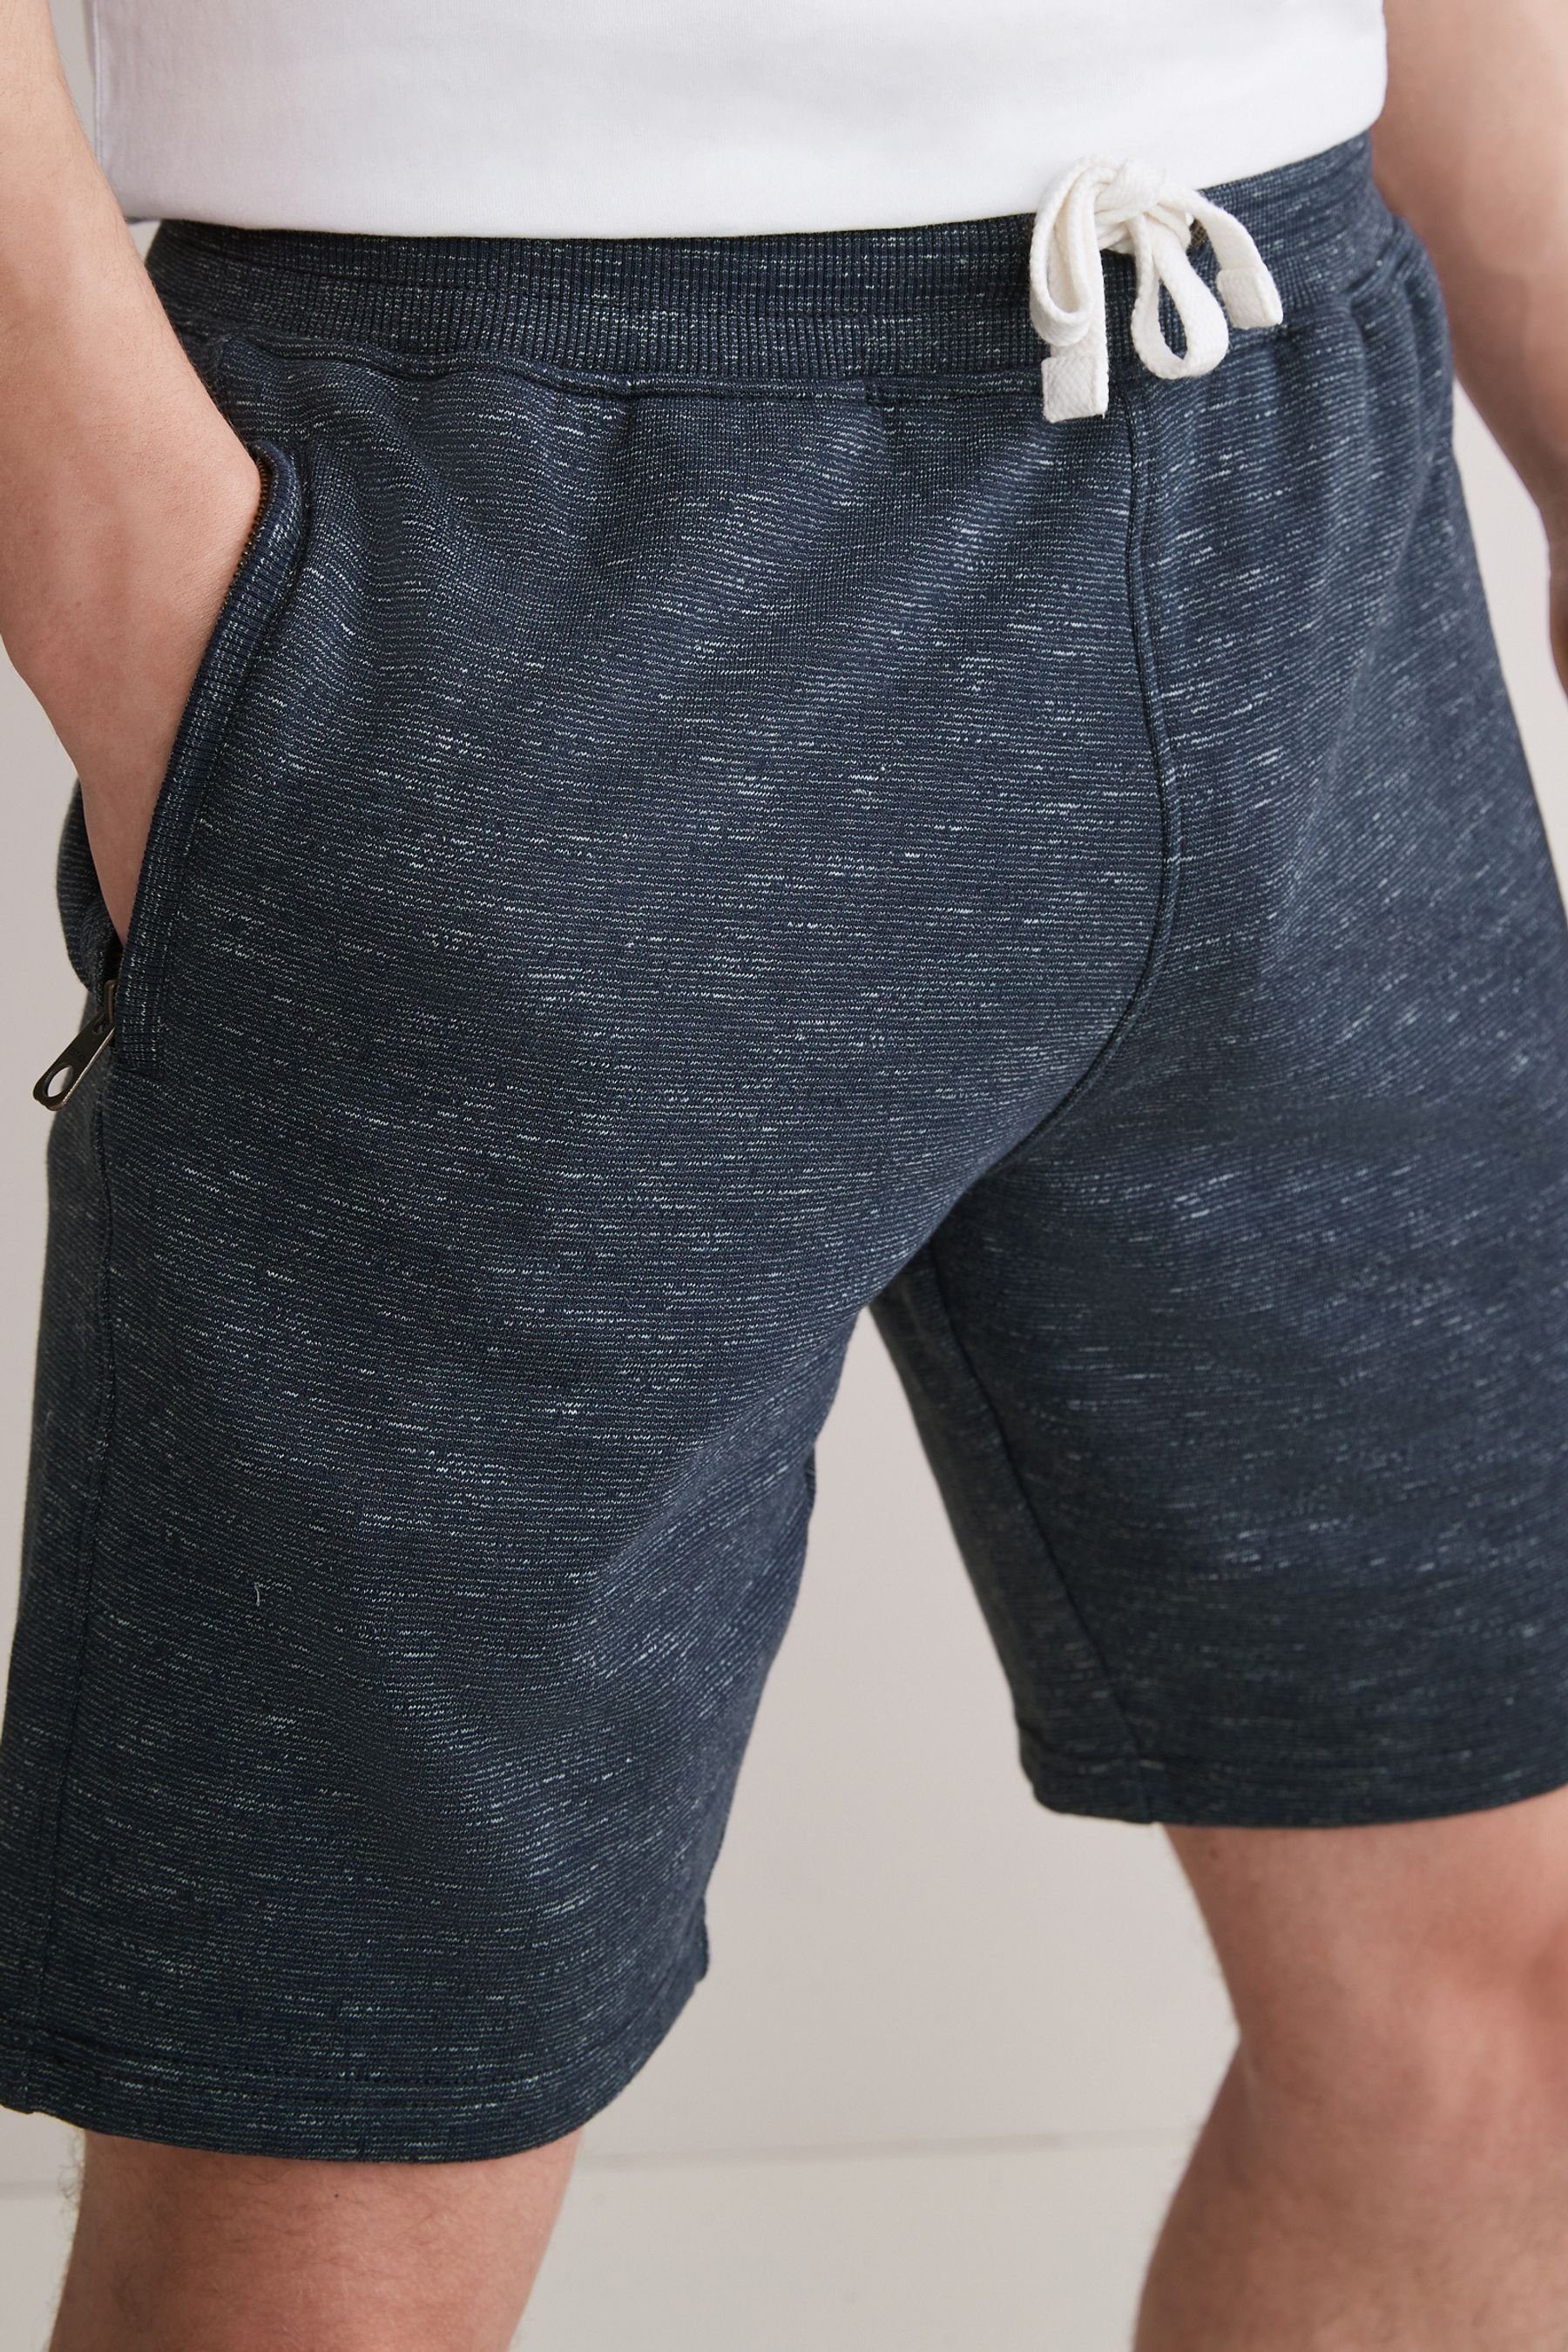 Herren Kurze Hosen Next Shorts Melierte Jersey-Shorts mit Reißverschlusstaschen